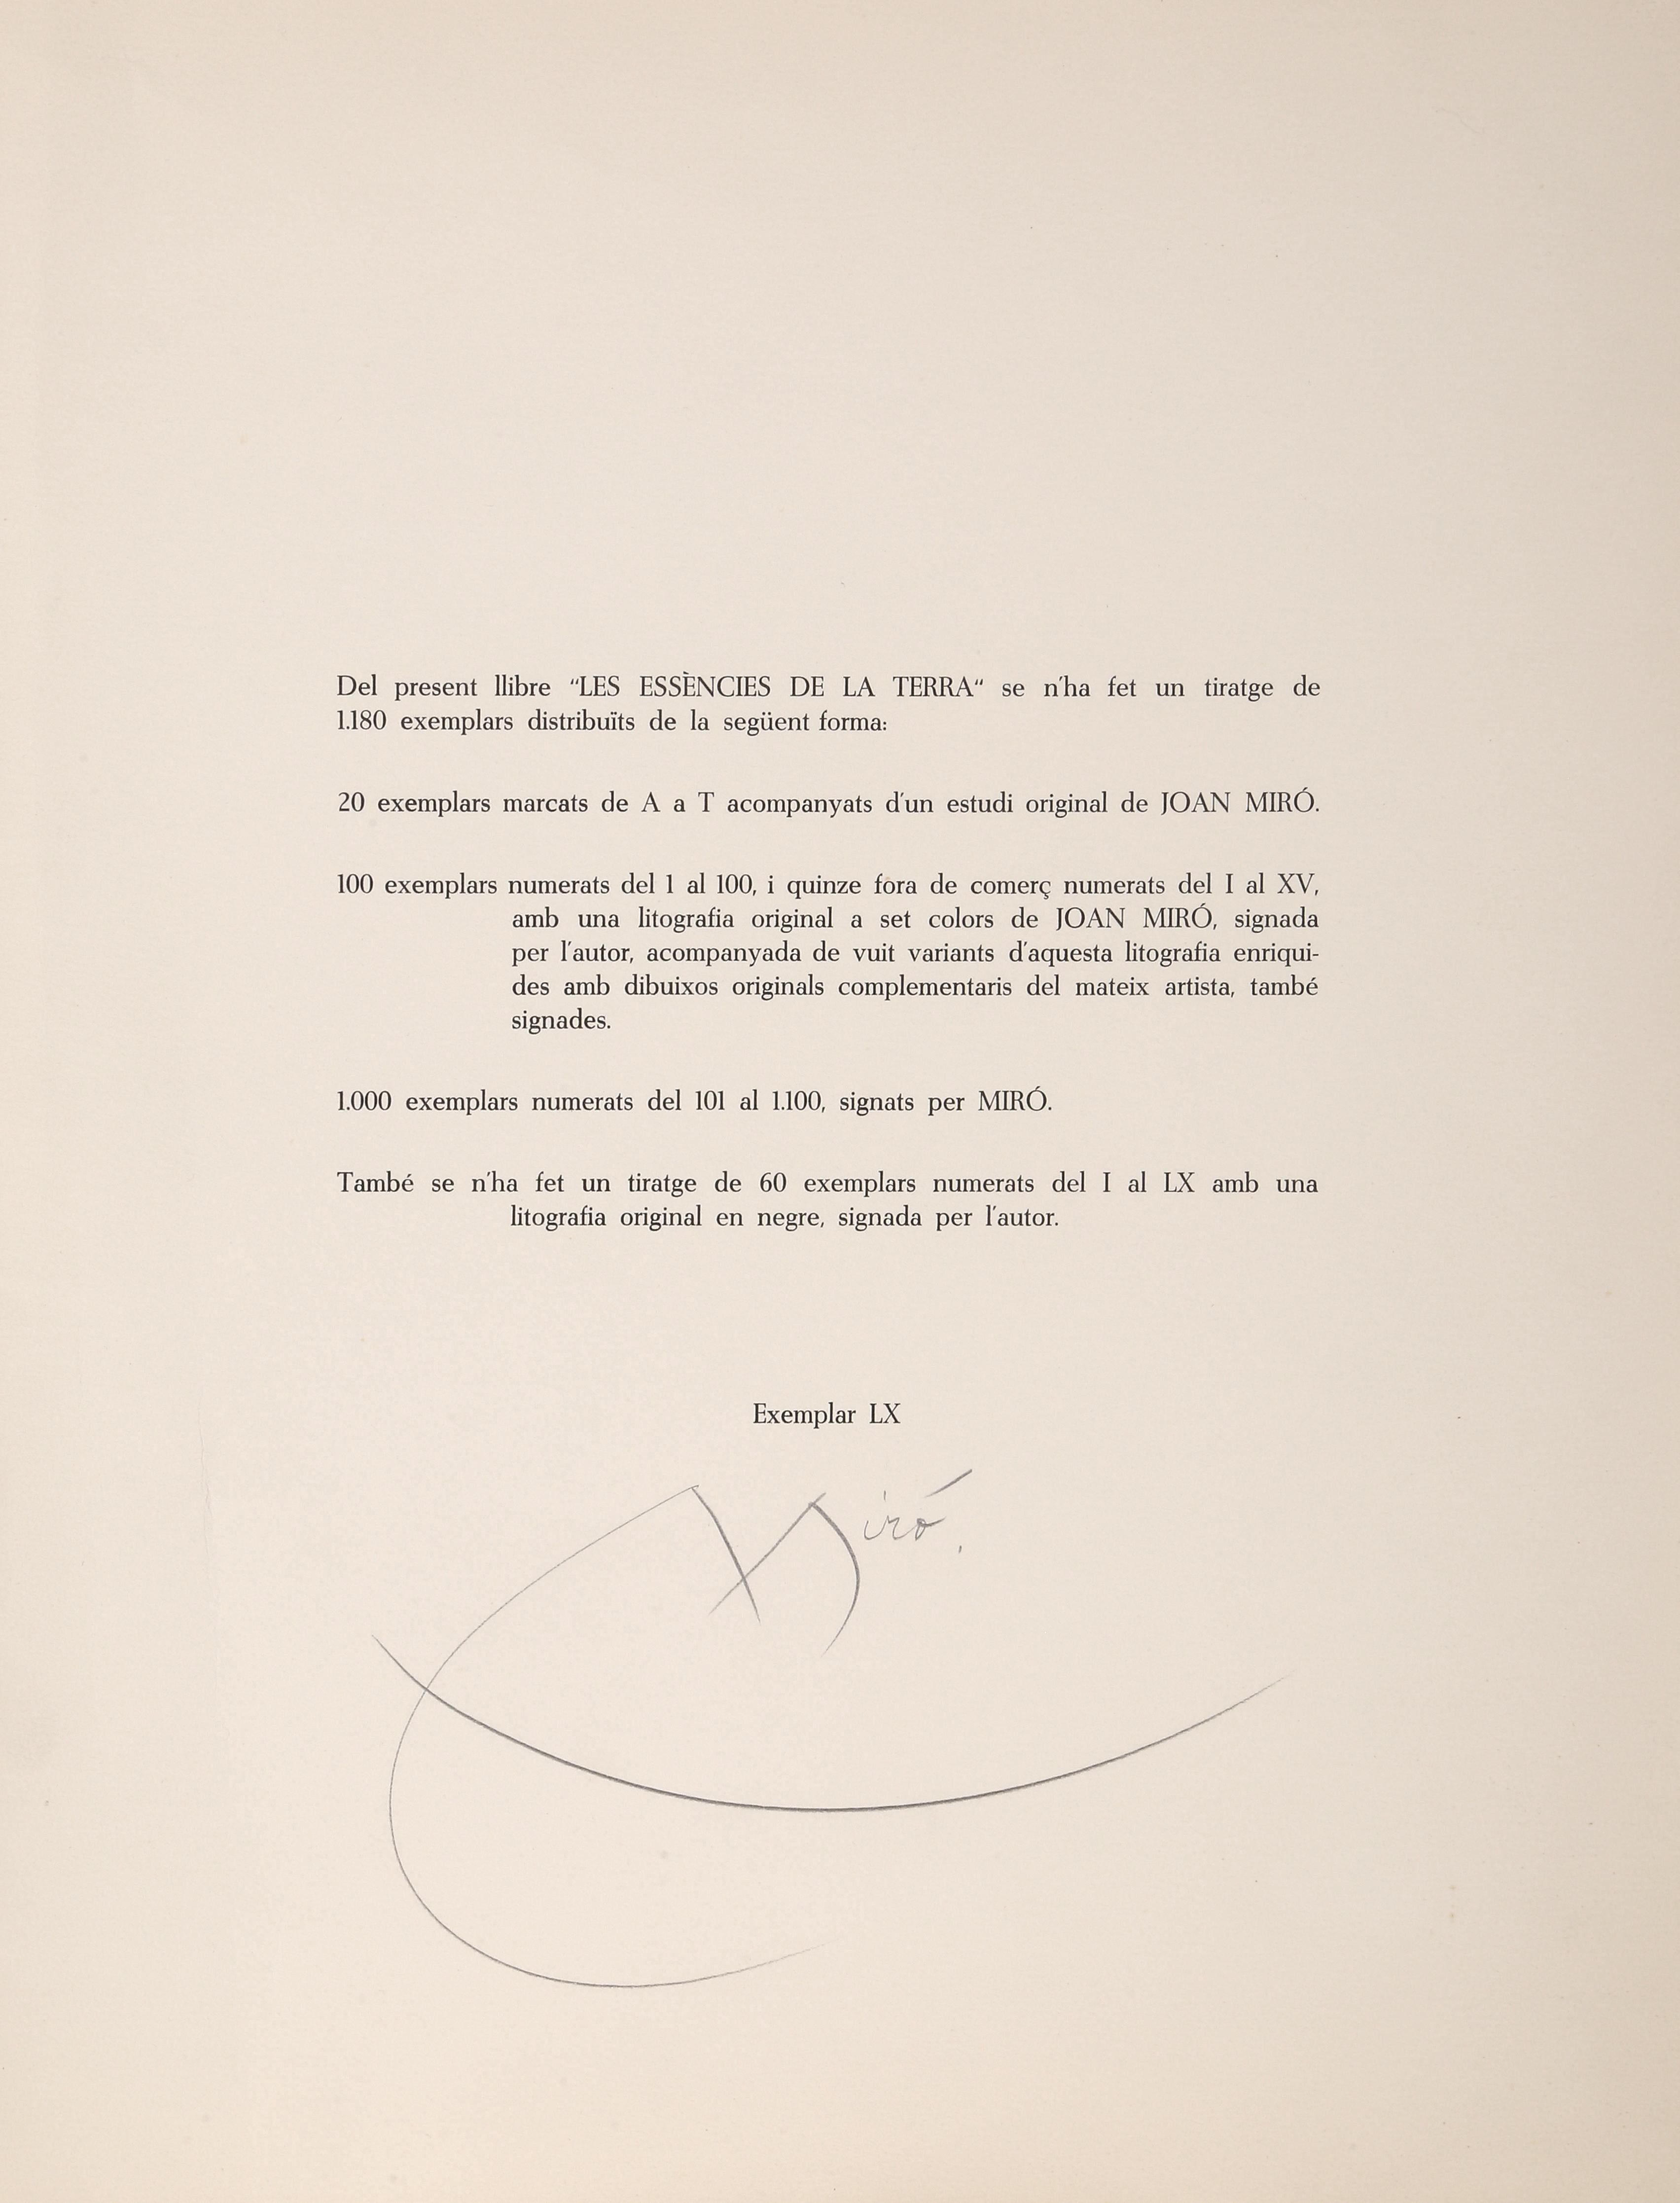 Les Essencies de la Tierra, Lithograph by Joan Miró 1968 2